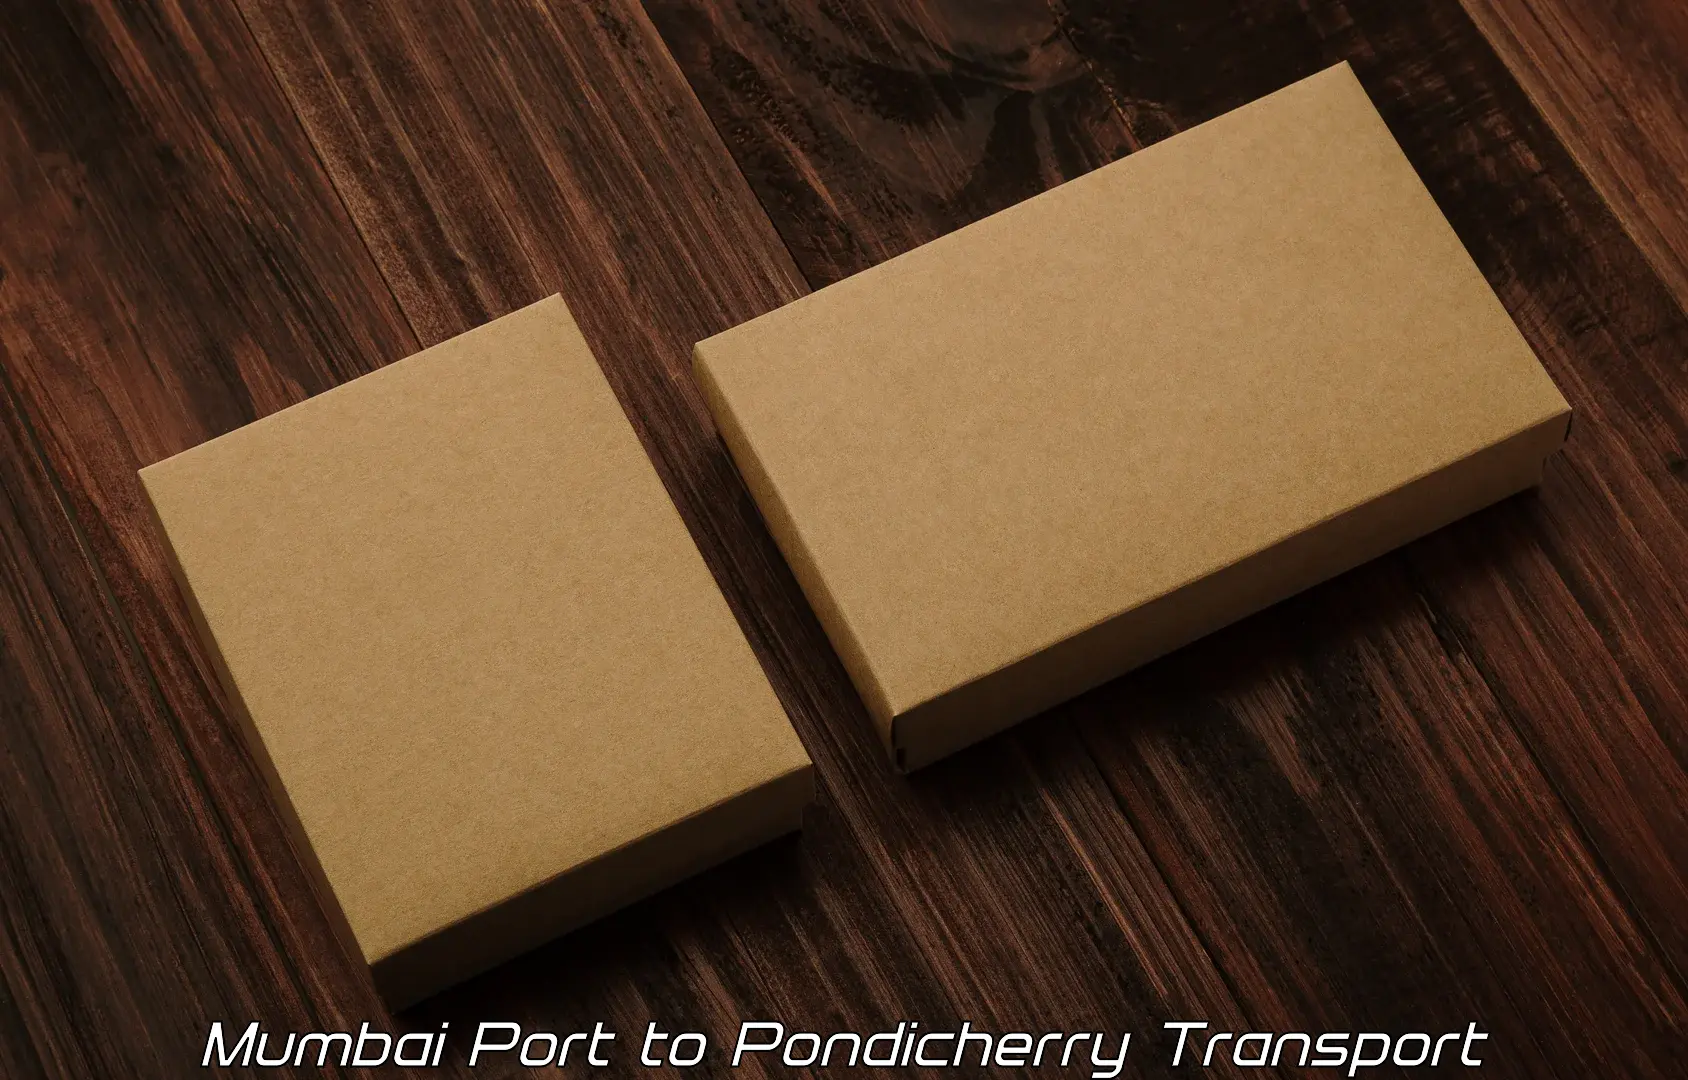 Transport in sharing Mumbai Port to Pondicherry